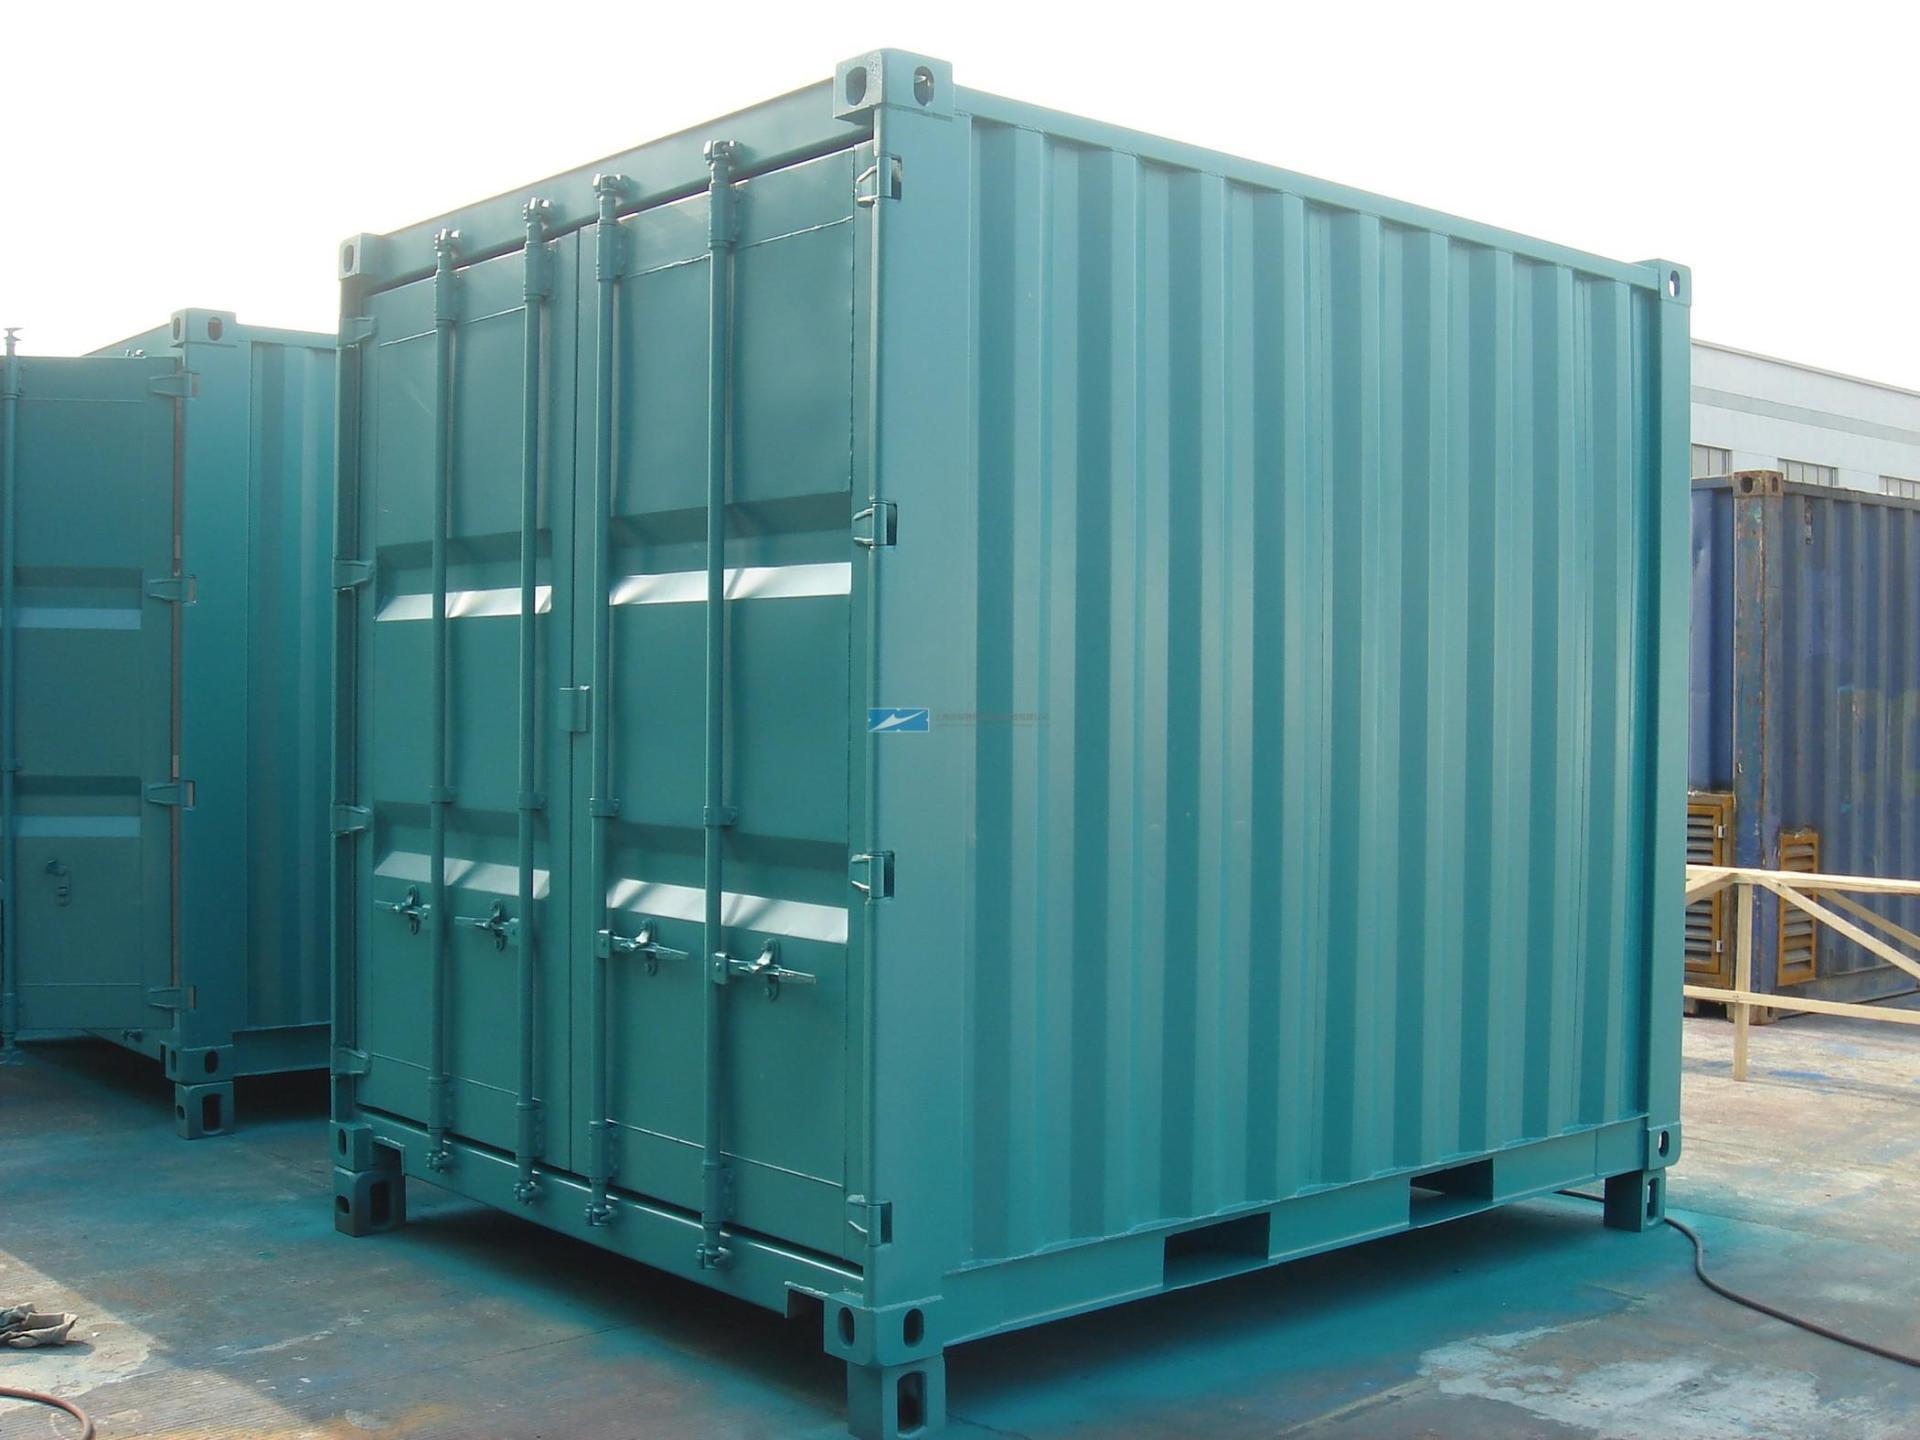 组合式集装箱作为一种创新型的集装箱产品